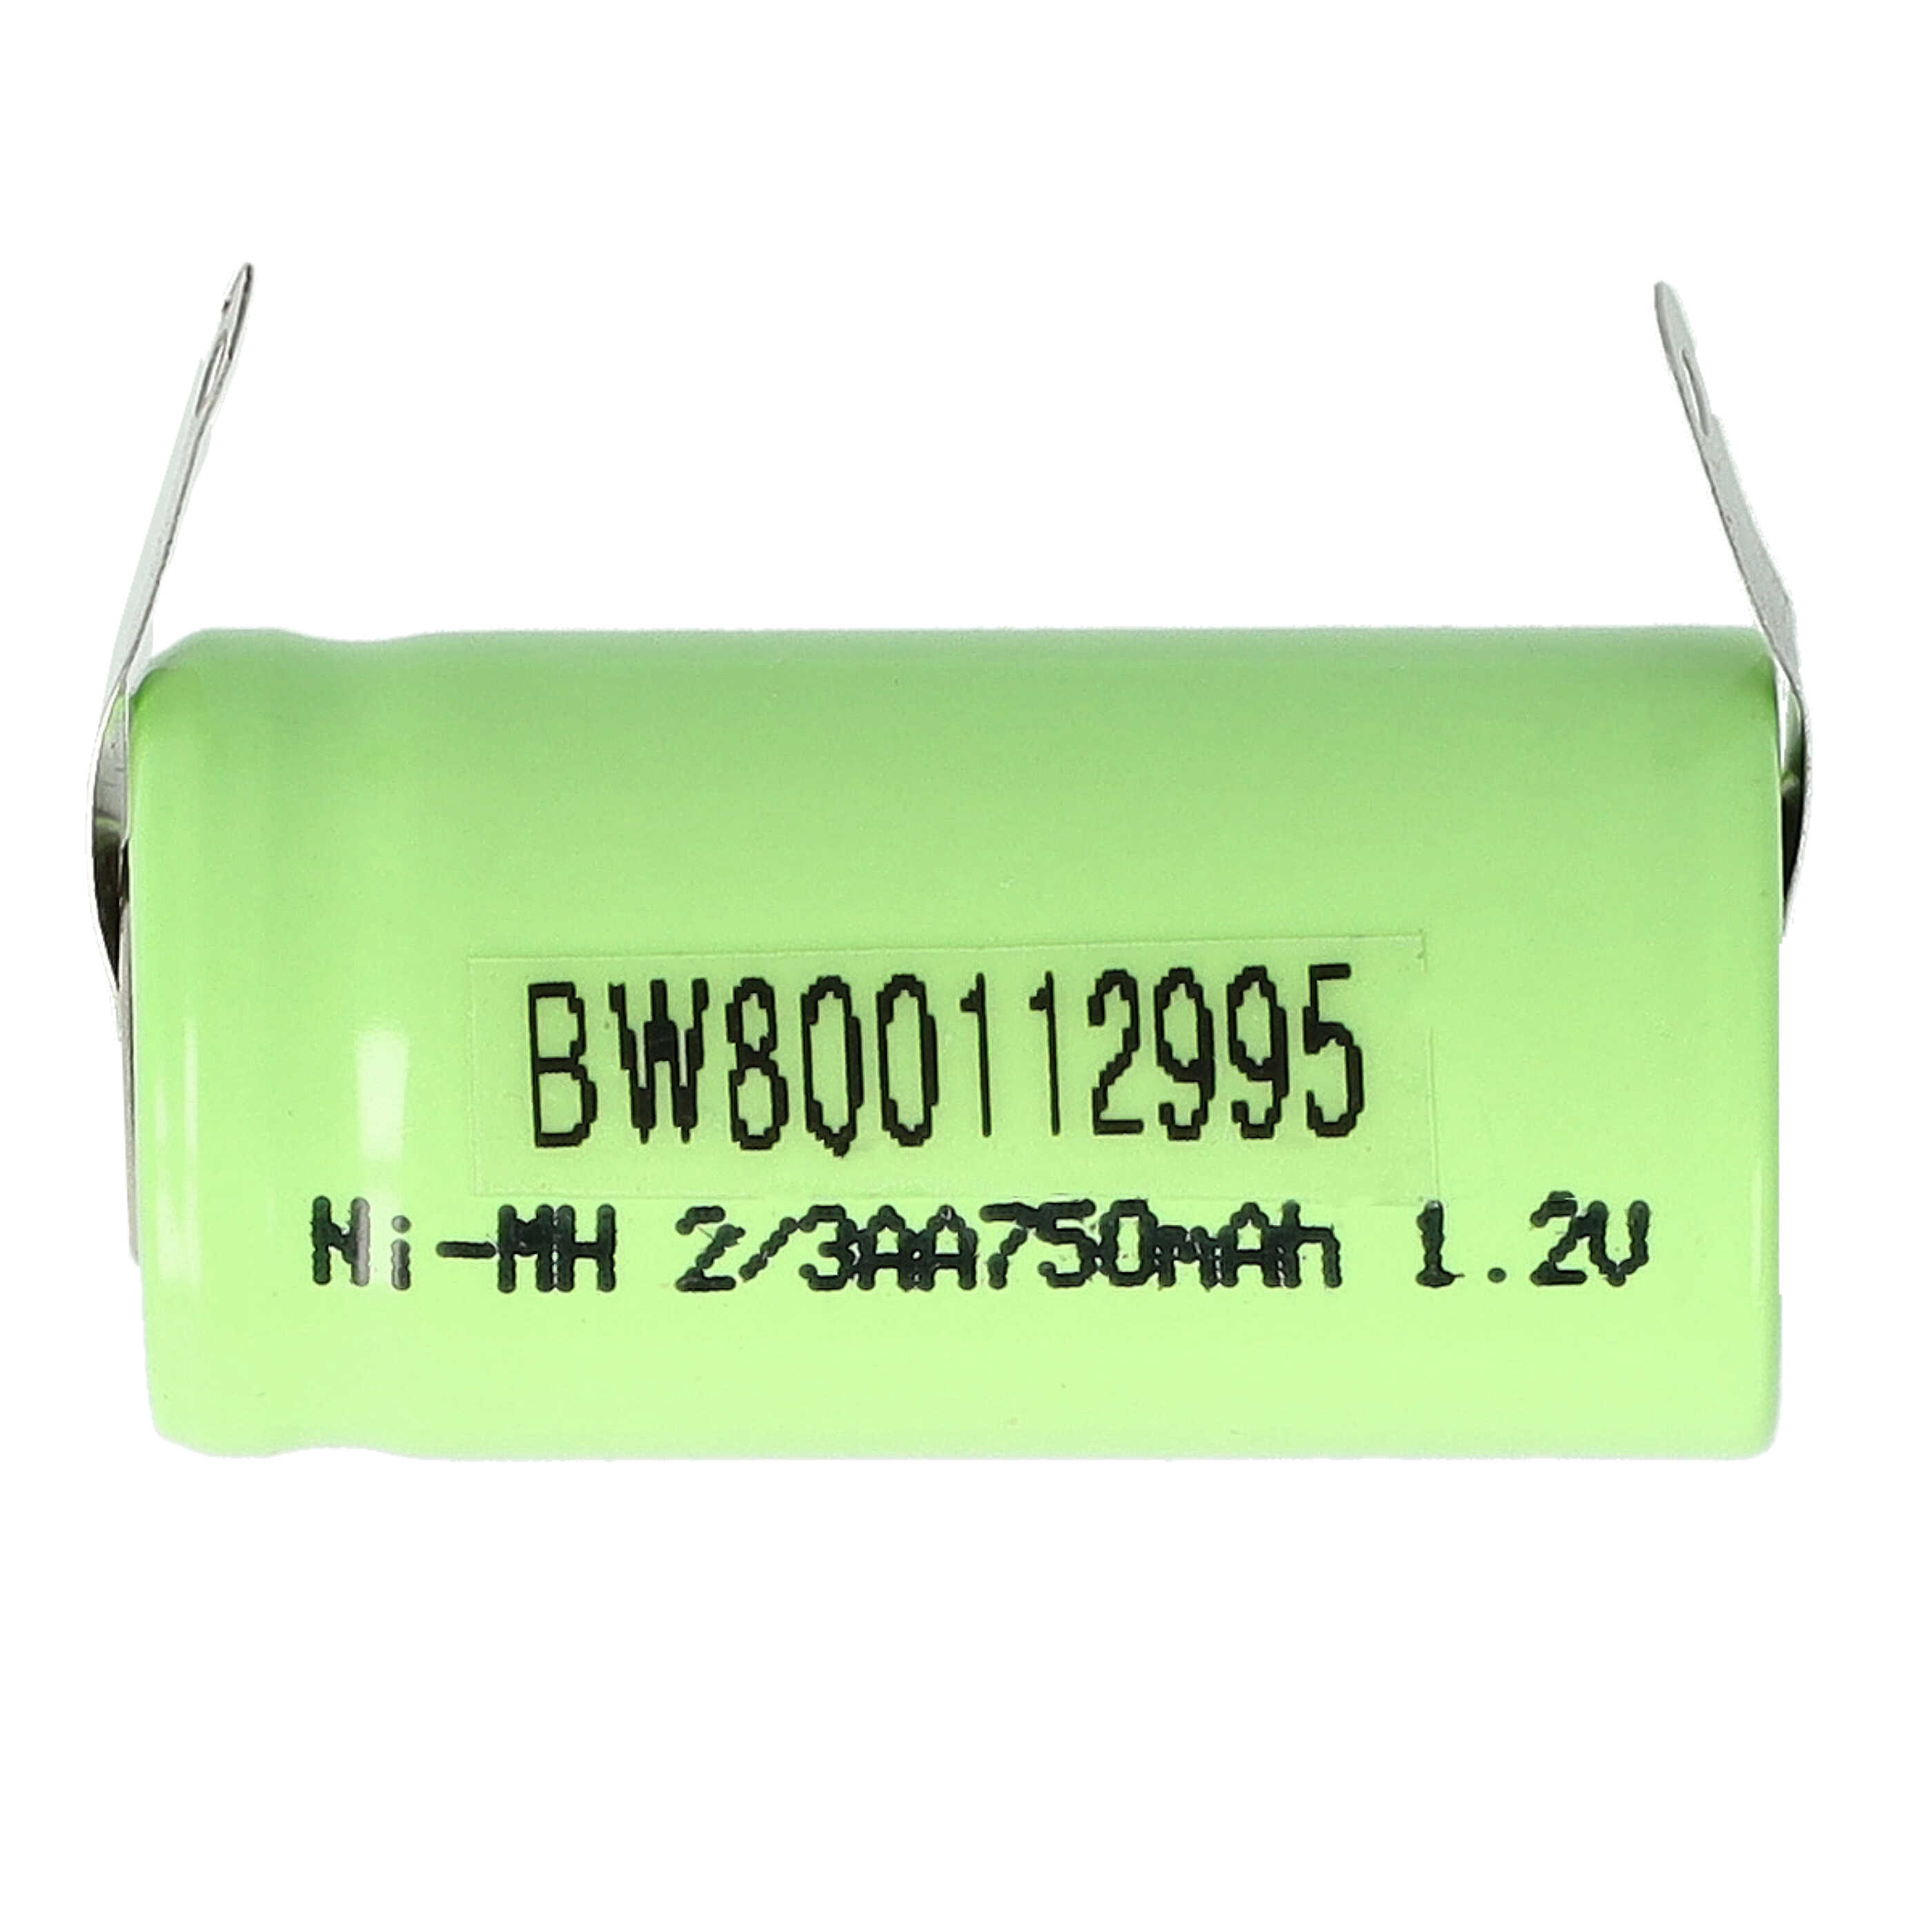 Batterie remplace 2/3AA pour modèle radio-télécommandé - 750mAh 1,2V NiMH